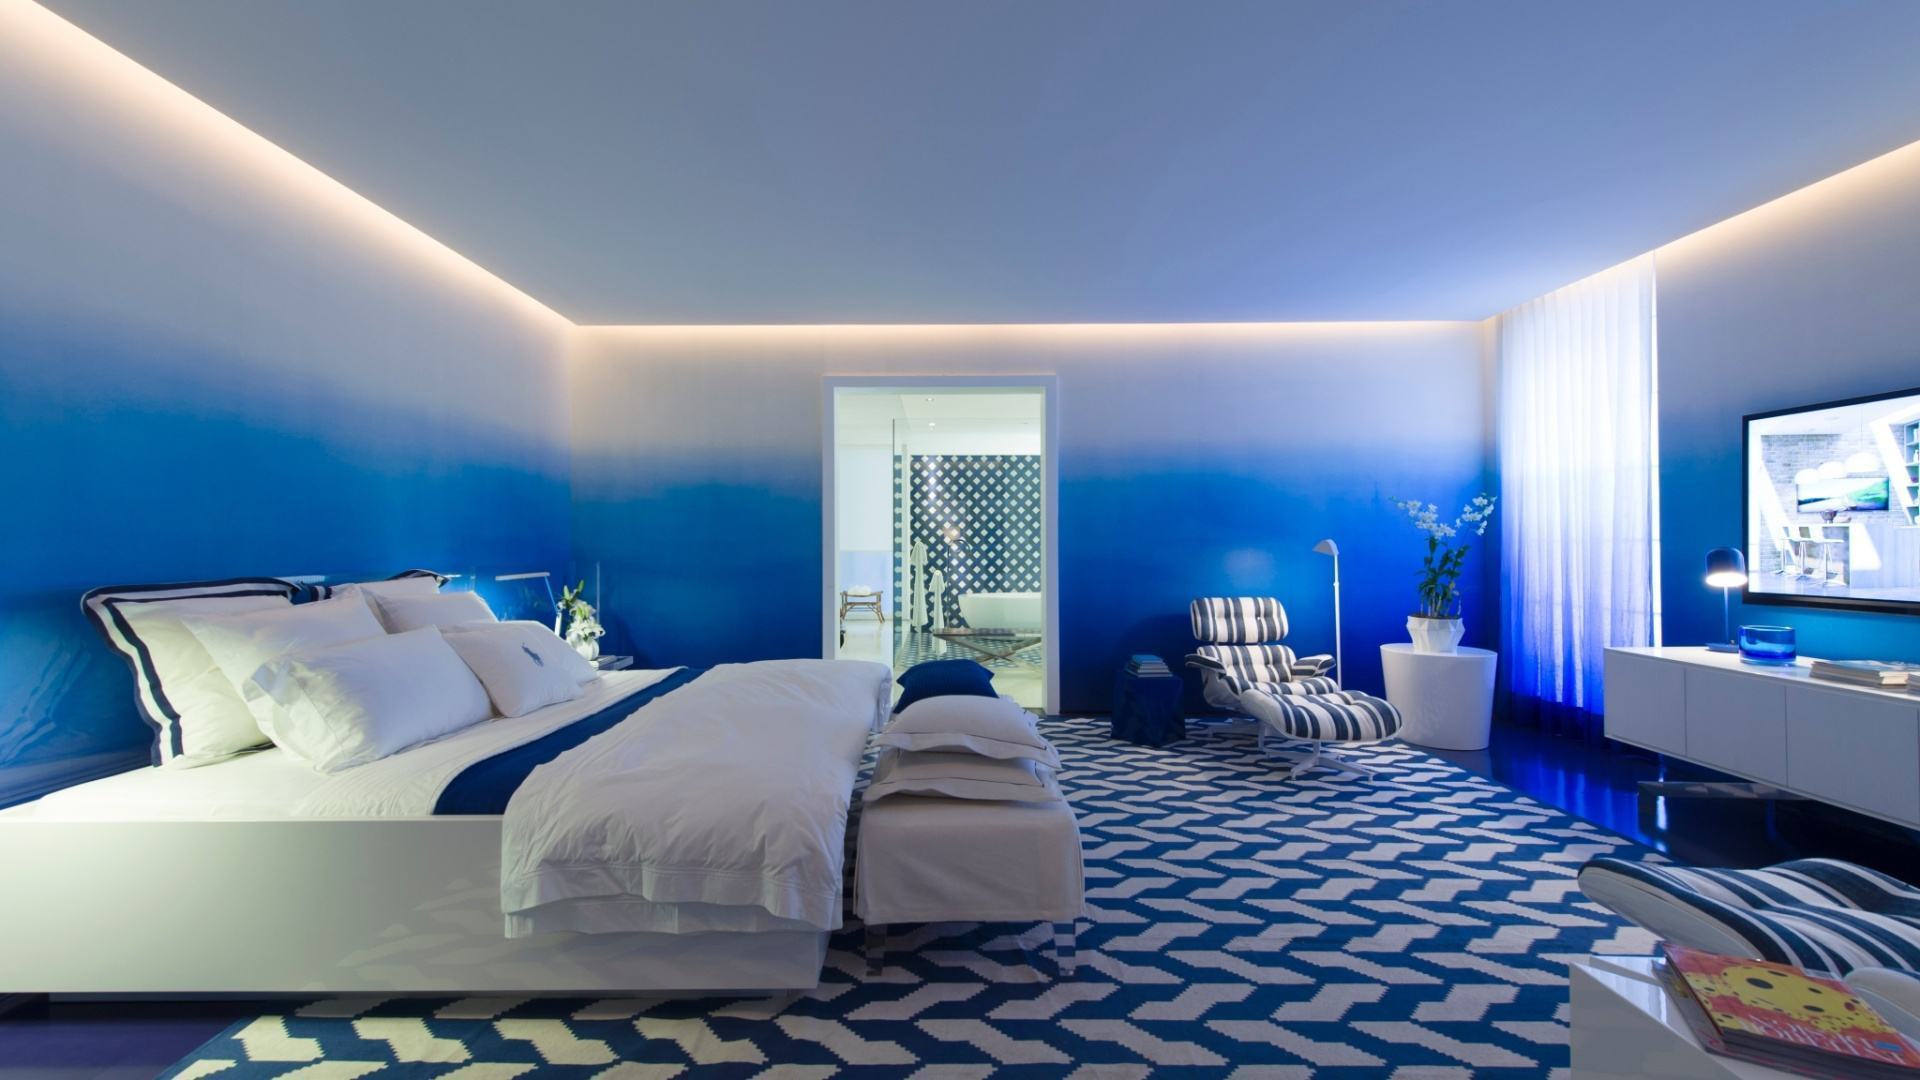 Красивые синие комнаты. Синий потолок. Спальня в синих тонах. Спальня в сине белых тонах. Синие стены в спальне.